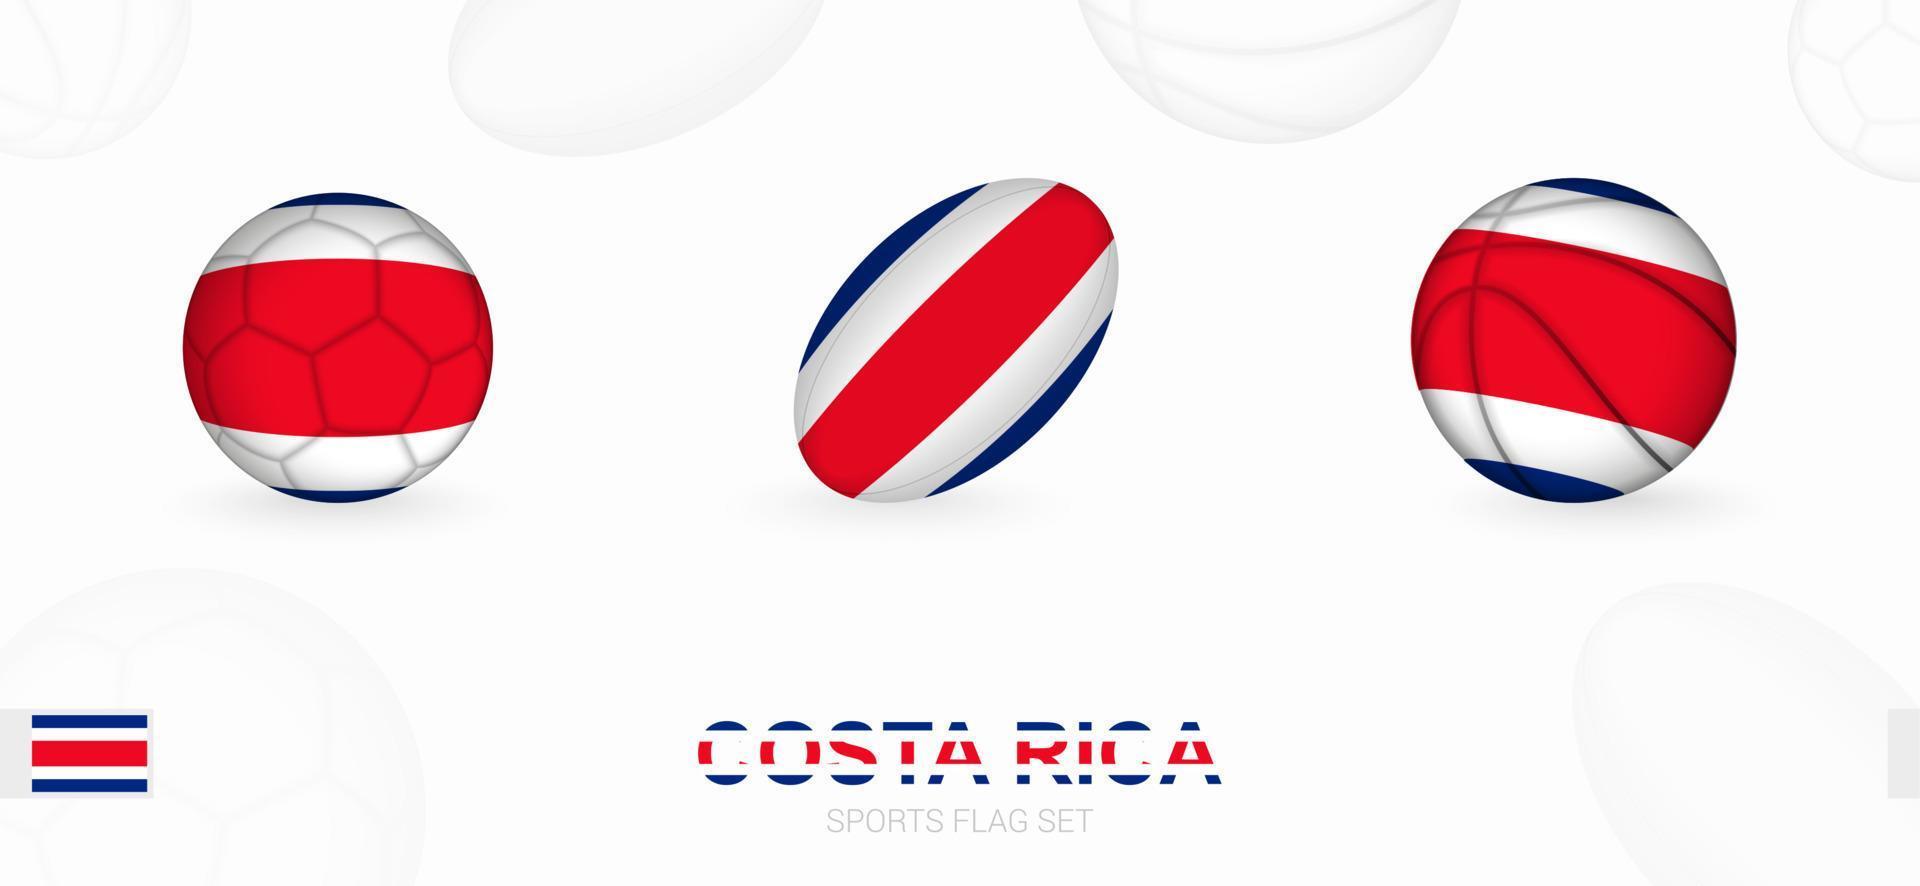 des sports Icônes pour football, le rugby et basketball avec le drapeau de costa rica. vecteur